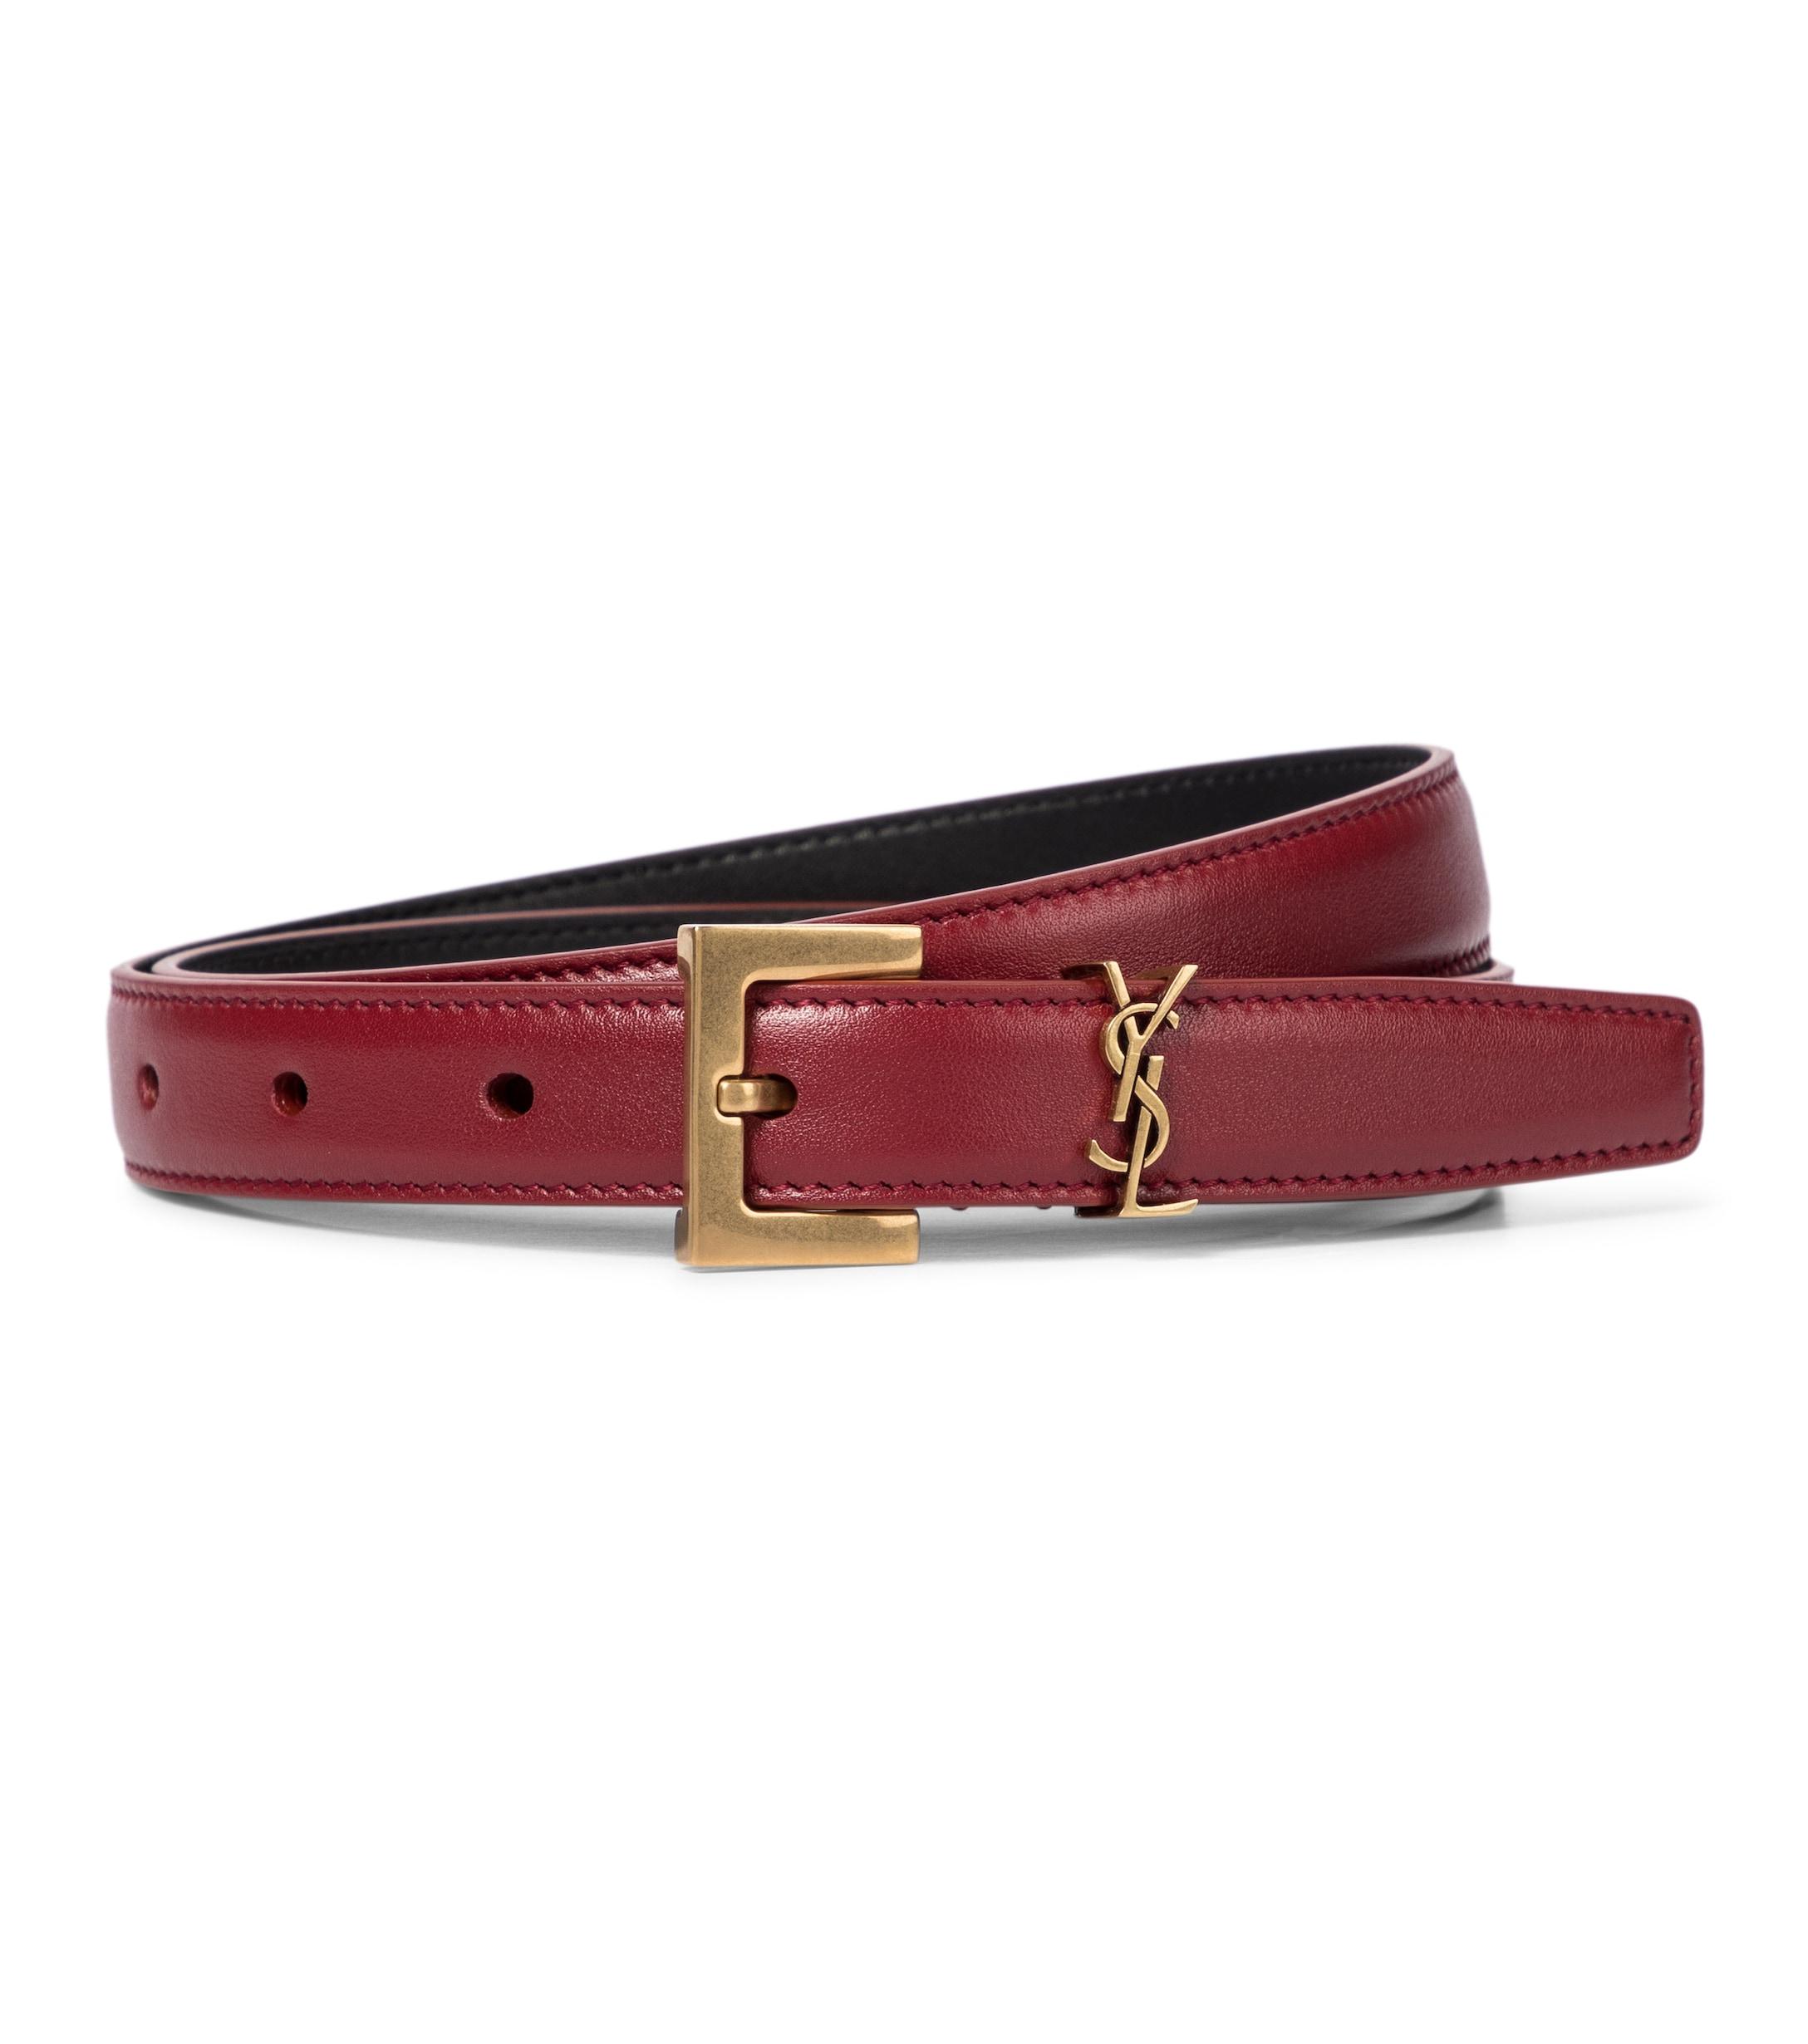 Saint Laurent Monogram Leather Belt in Red